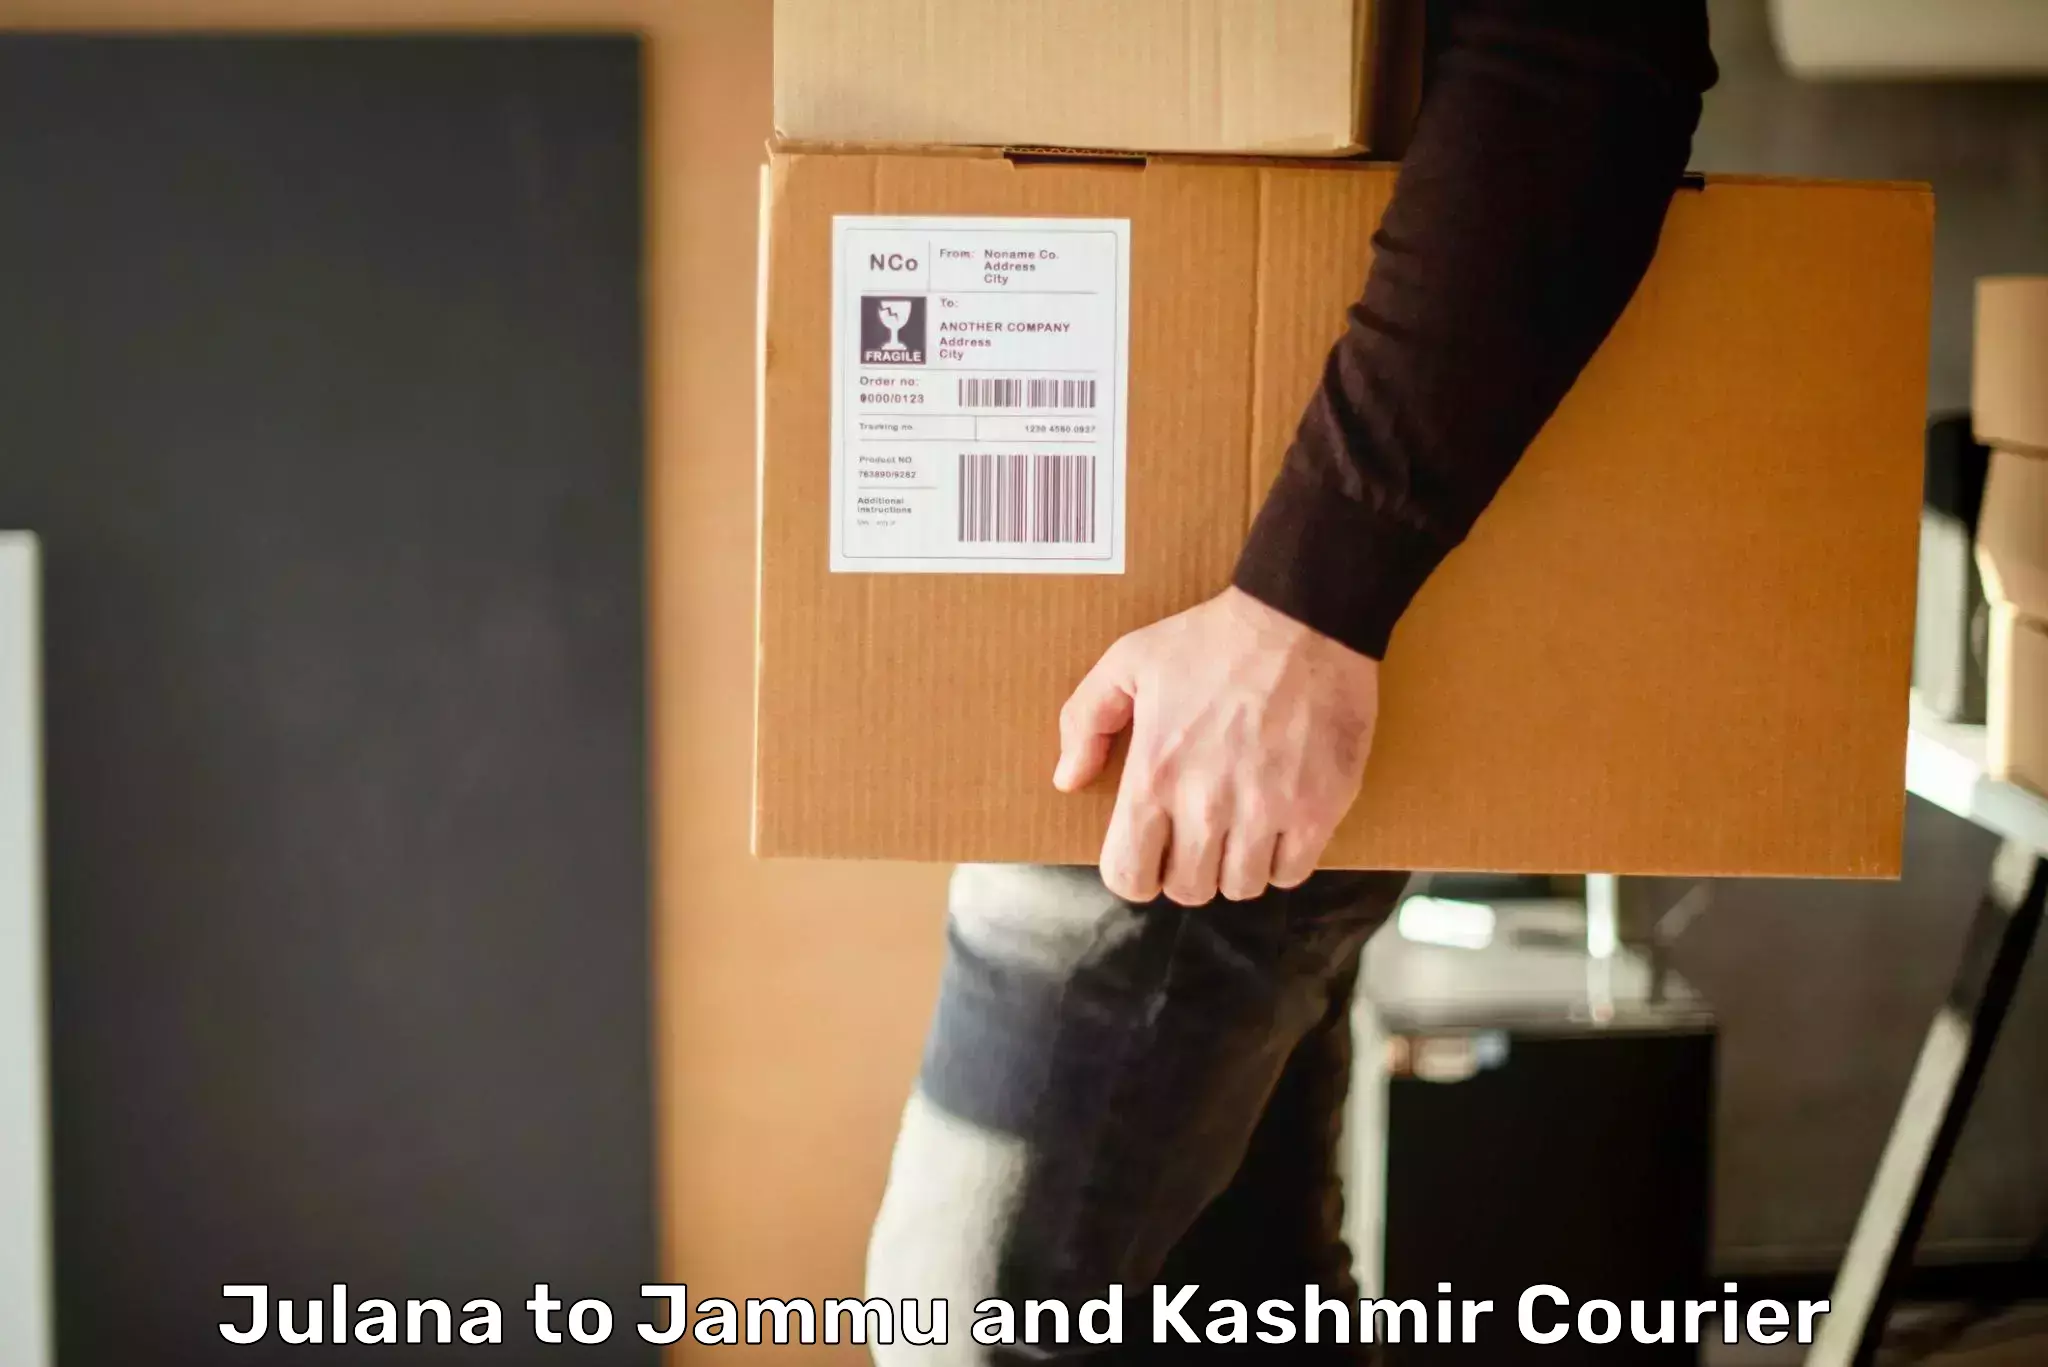 Courier service comparison Julana to Jakh